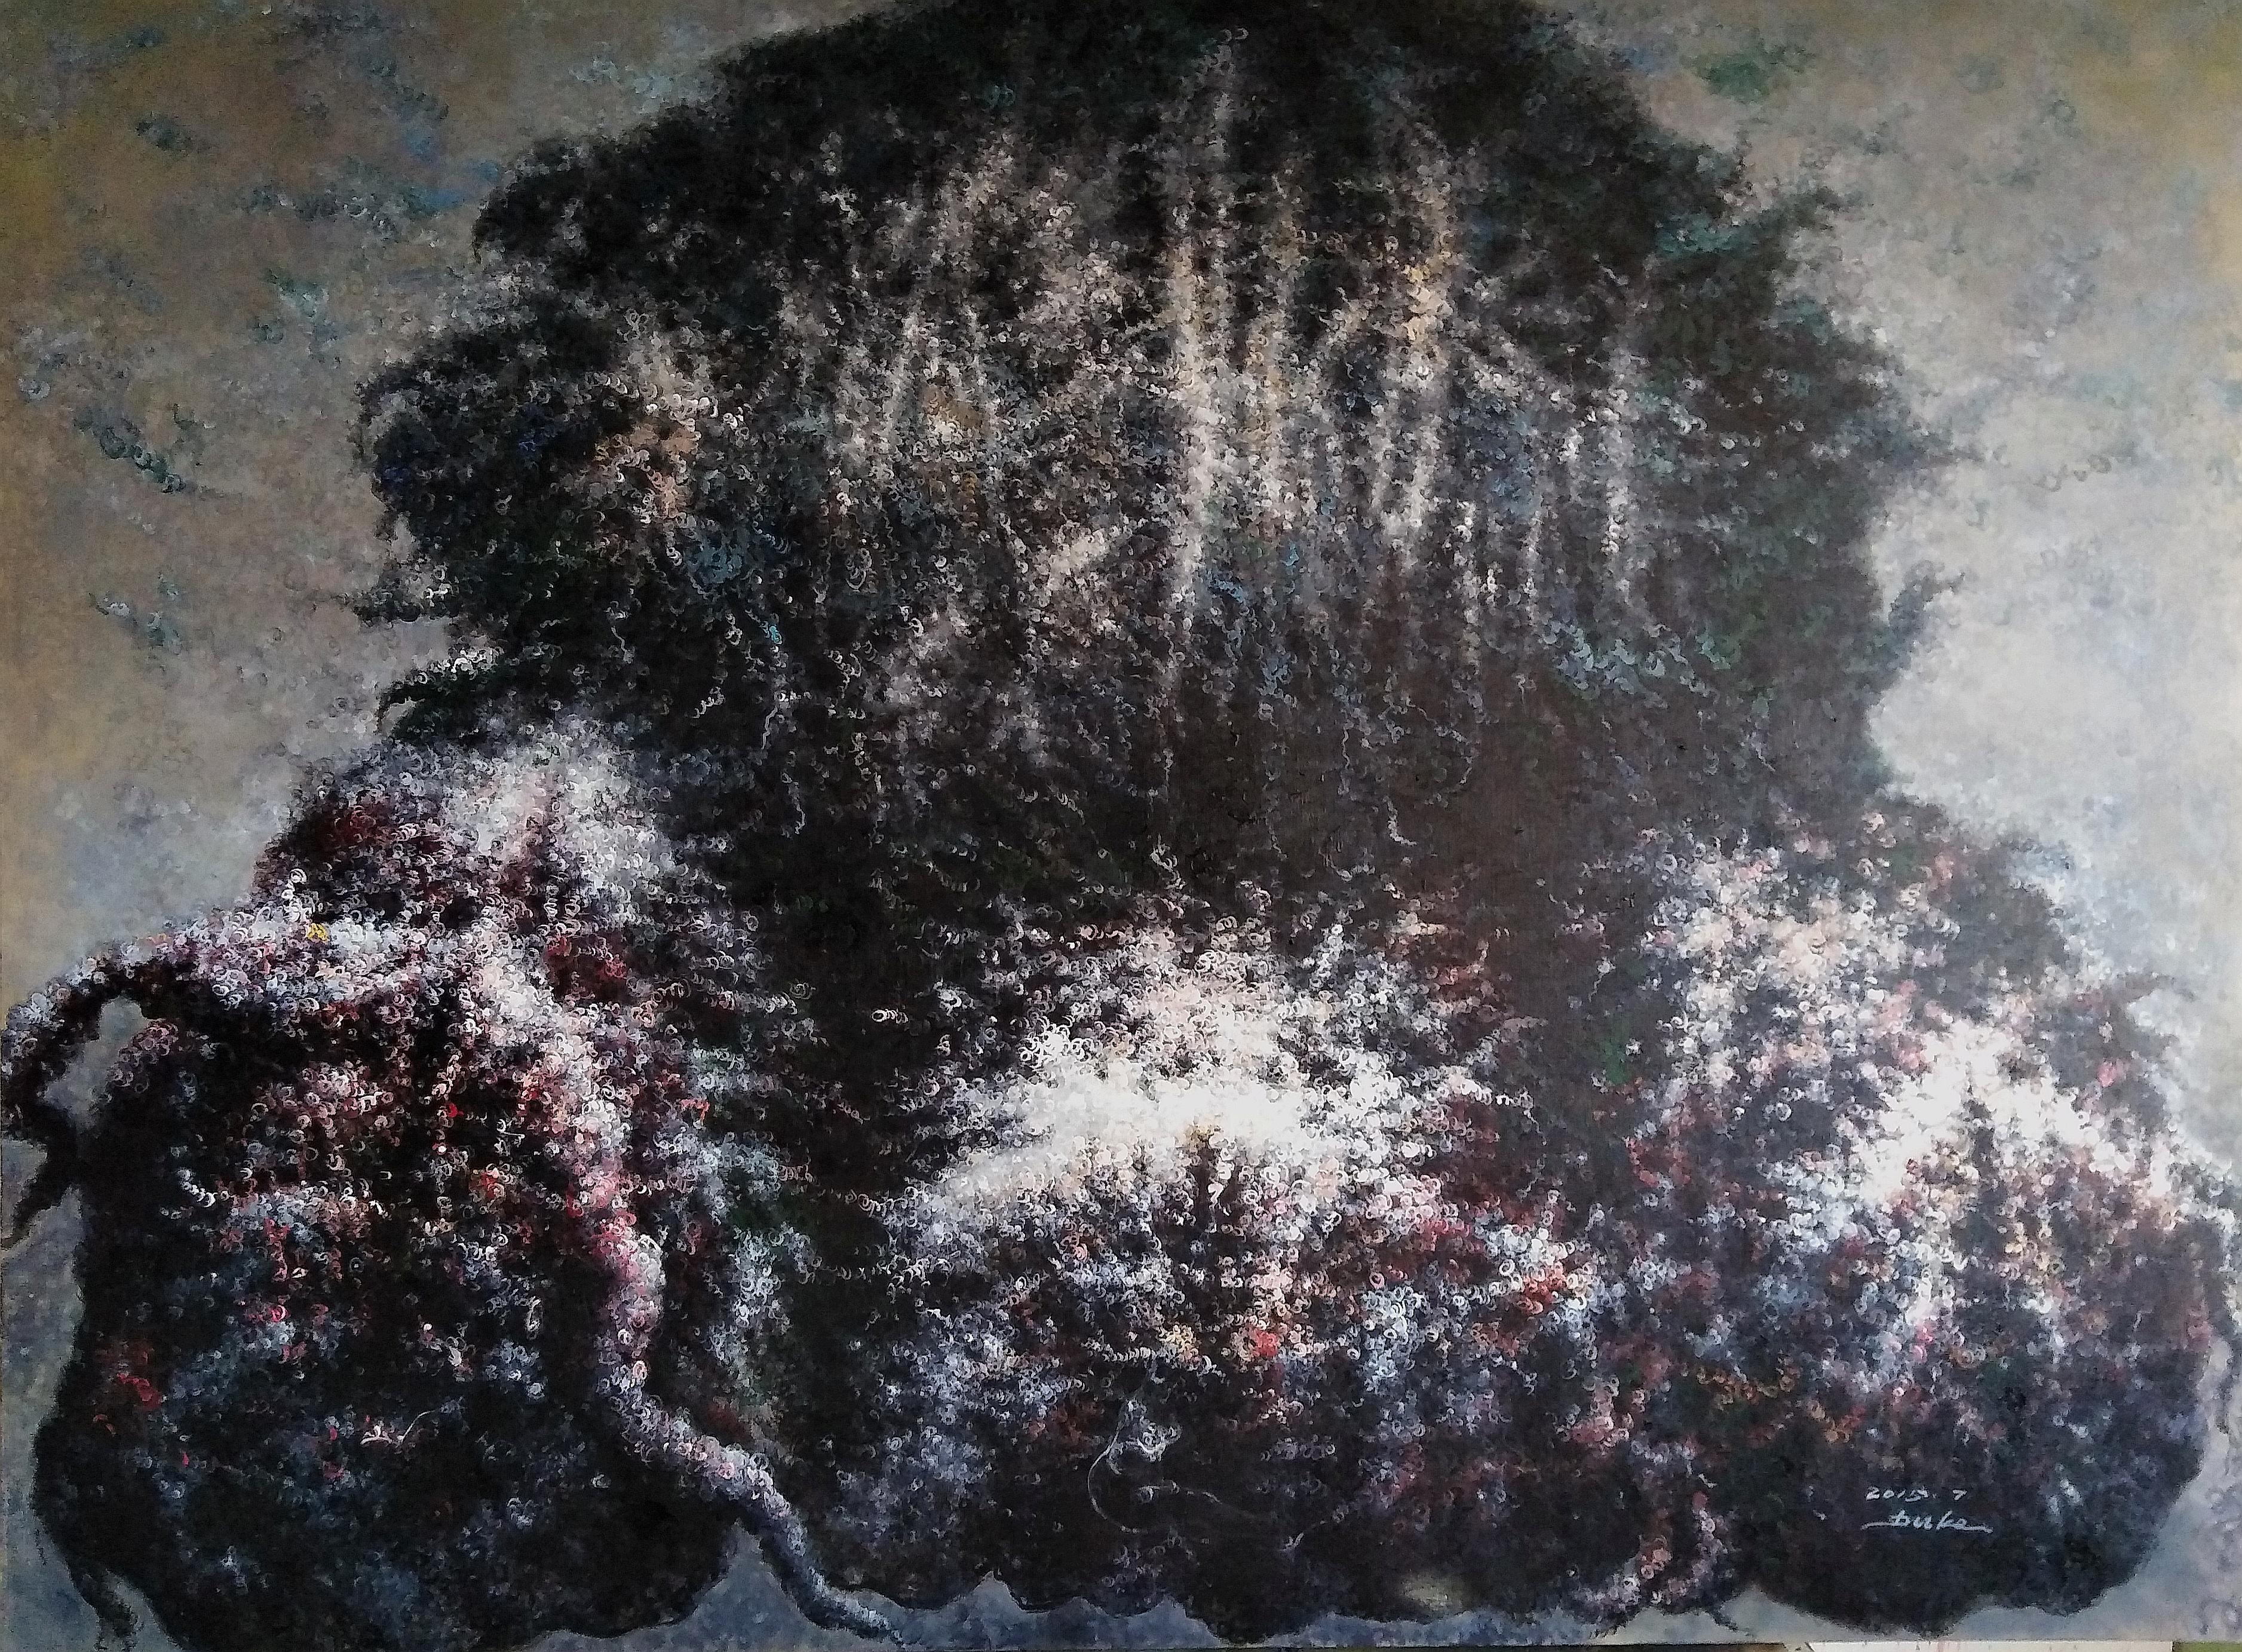 Huile sur toile

Du Ke est un artiste chinois né en 1968 qui vit et travaille dans le district de Tongzhou, à Pékin, en Chine. Il a été diplômé du département de peinture de l'Academy Fine Paintings de Tianjin en 1994. En 1995, il s'est installé